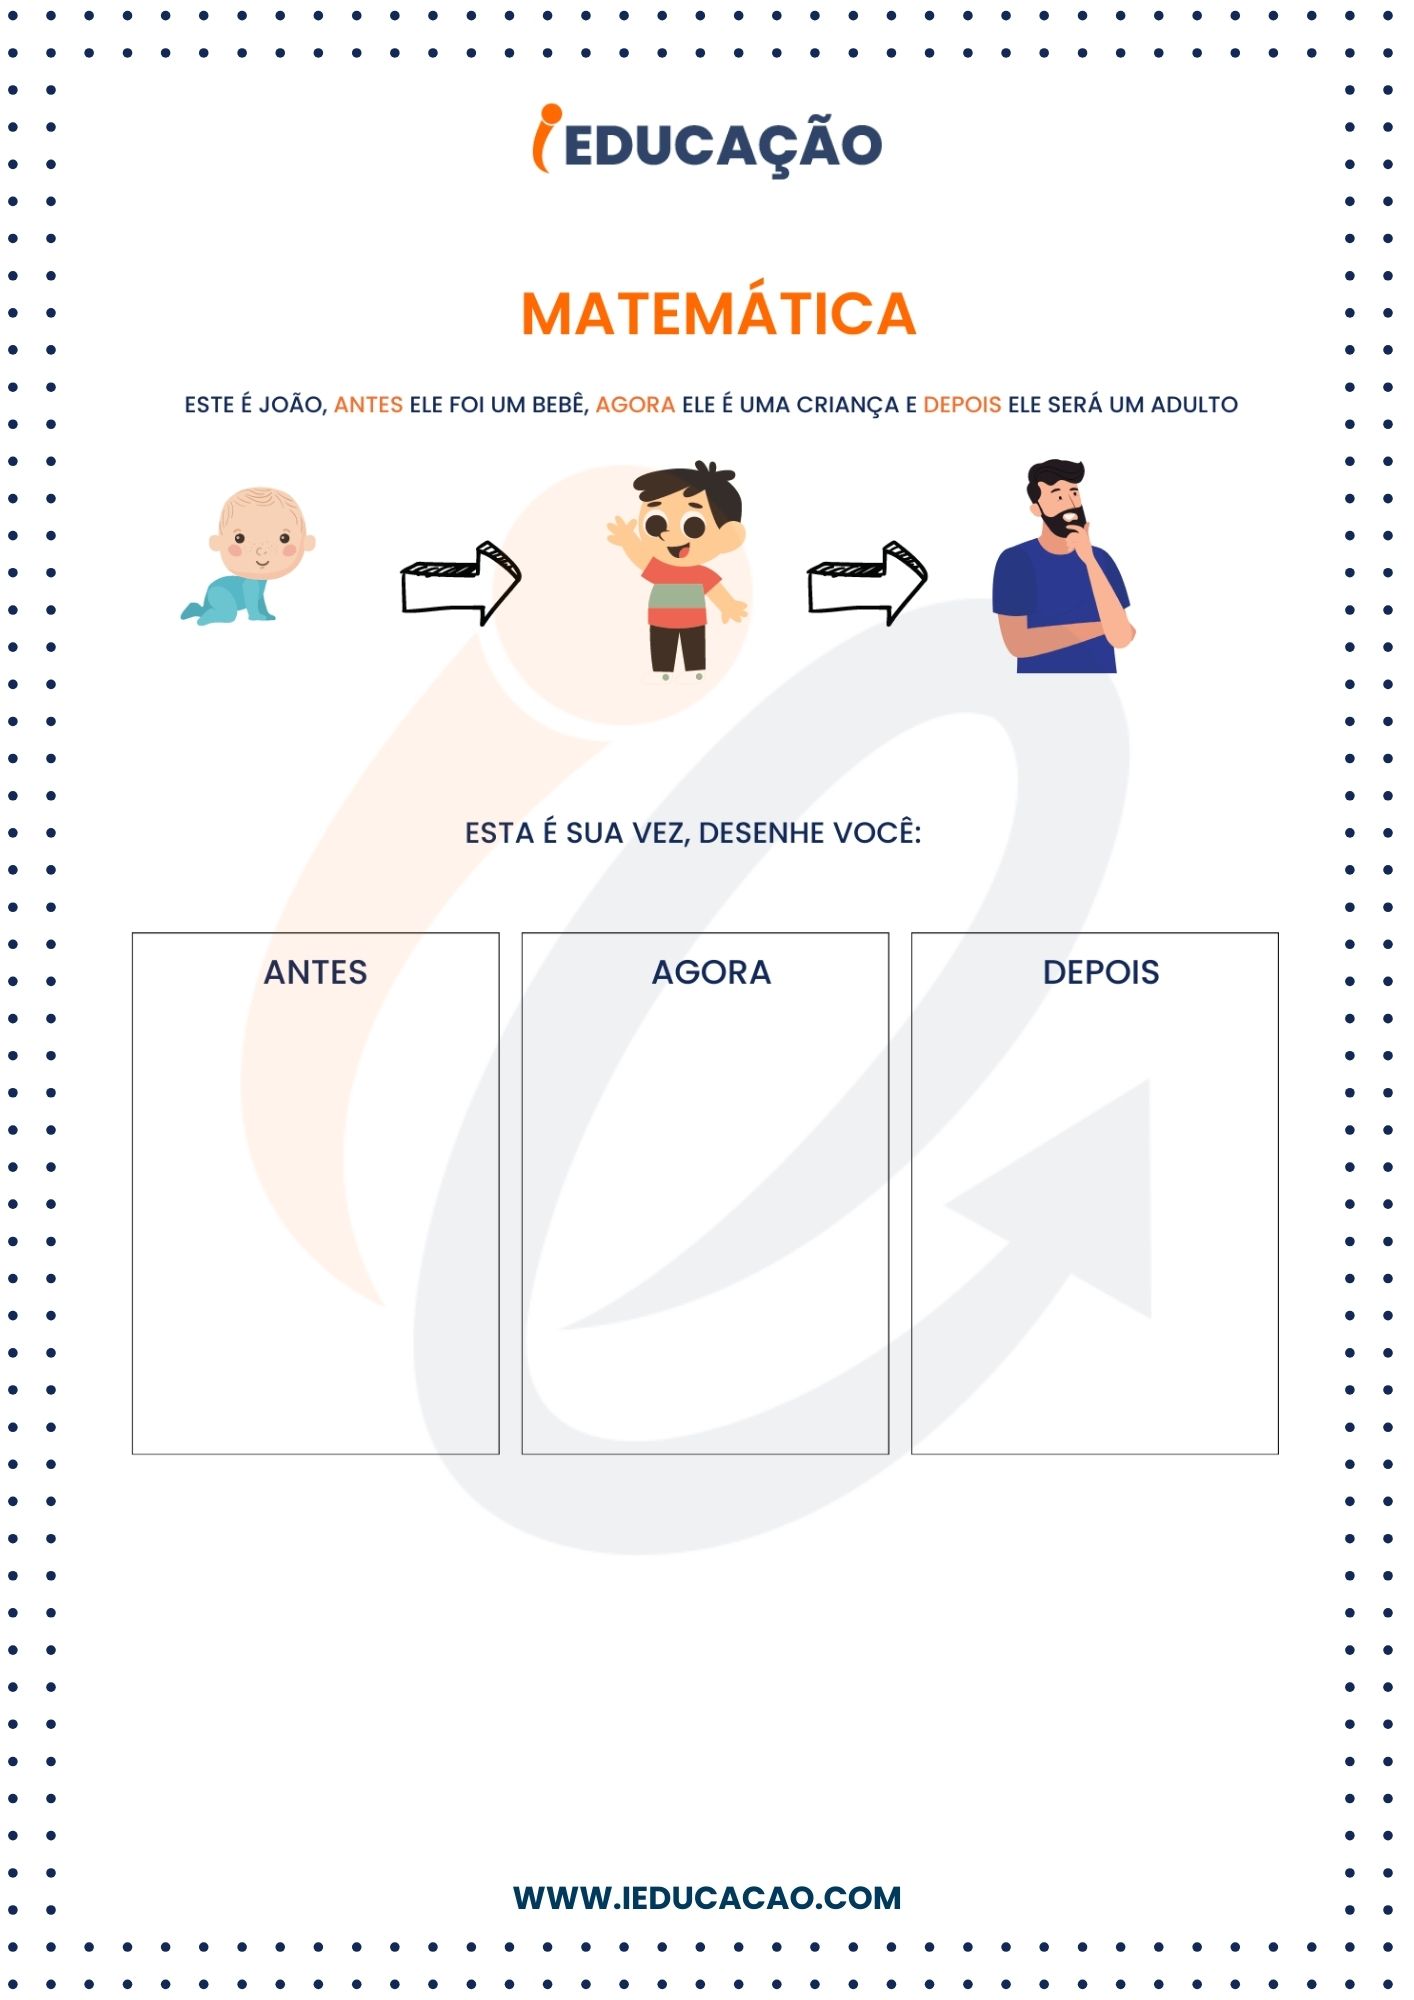 Atividades de Matemática 5 anos  - Atividades de matemática para Educação infantil - ensinando o tempo_ antes, agora e depois.jpg